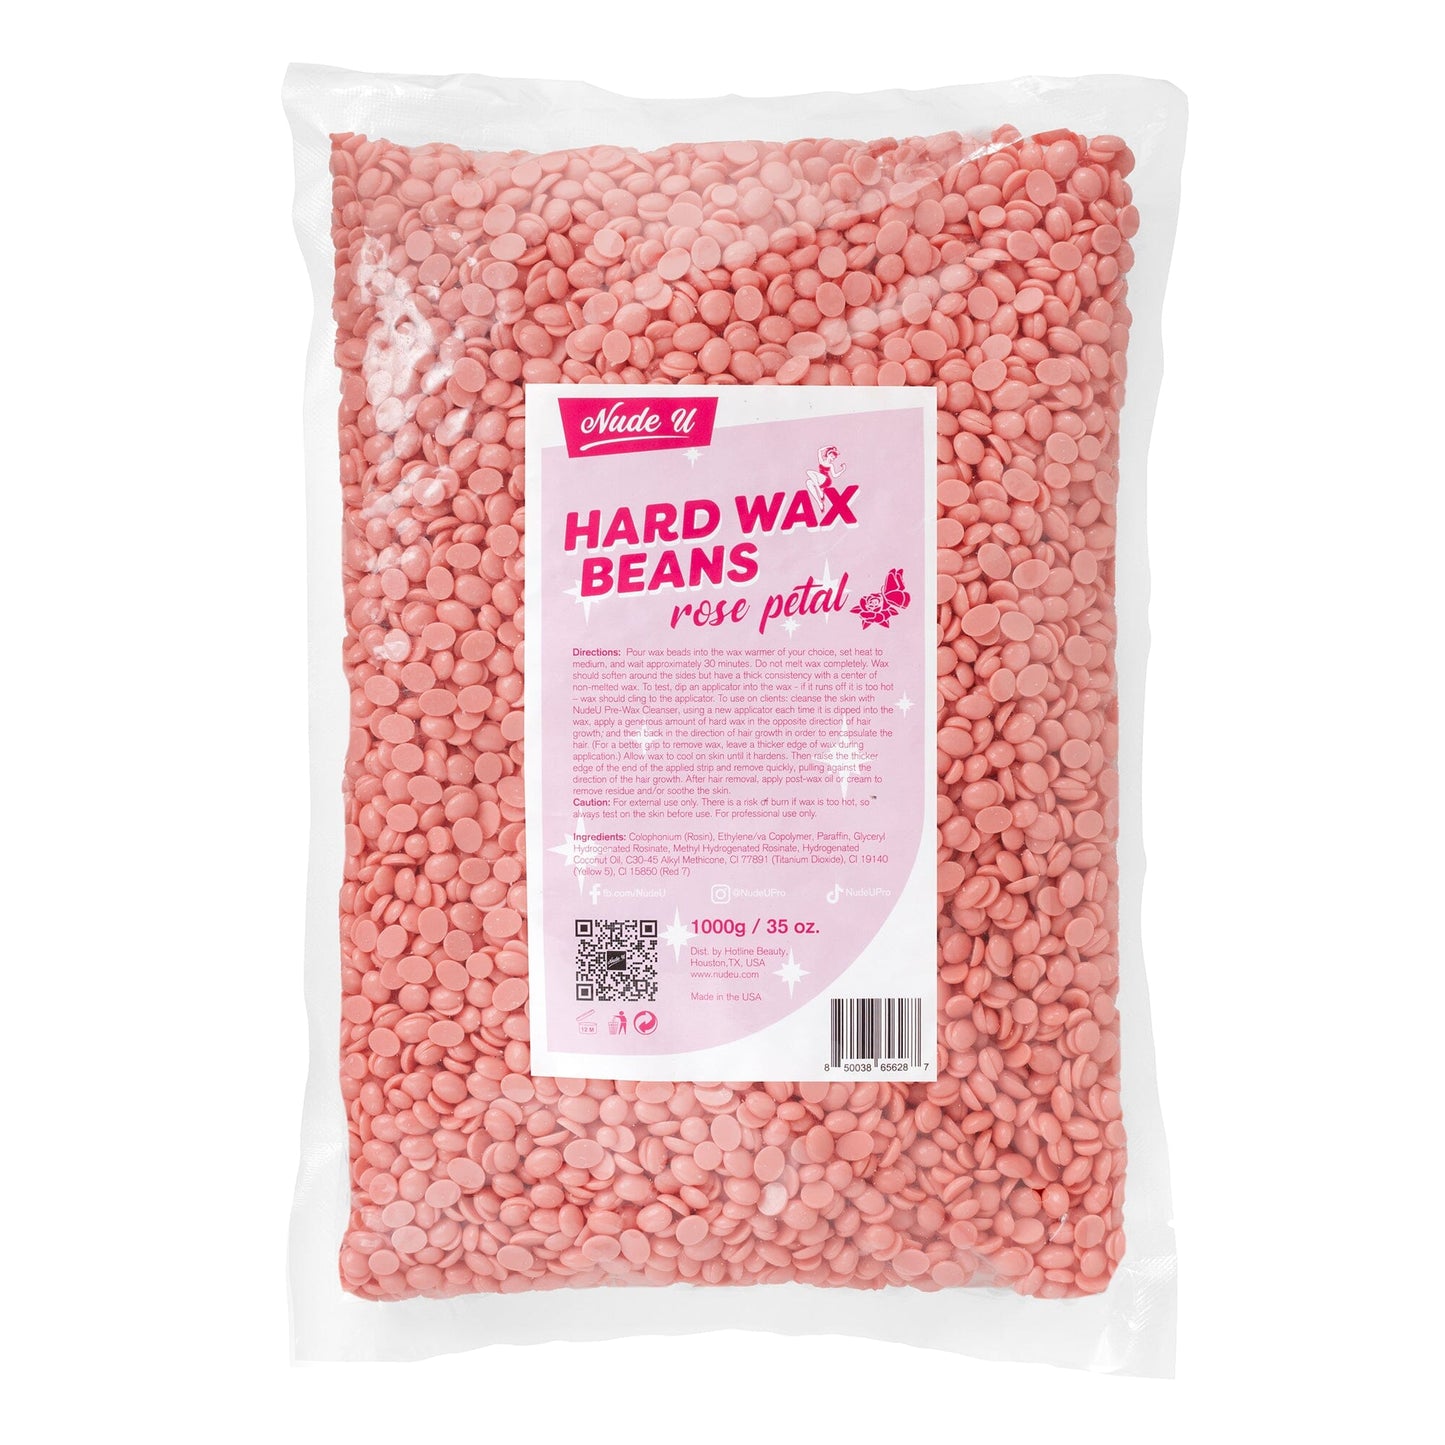 Hard Wax Beans | Rose Petal | NUDE U WAXING KITS & SUPPLIES NUDE U 35oz / 1000g 